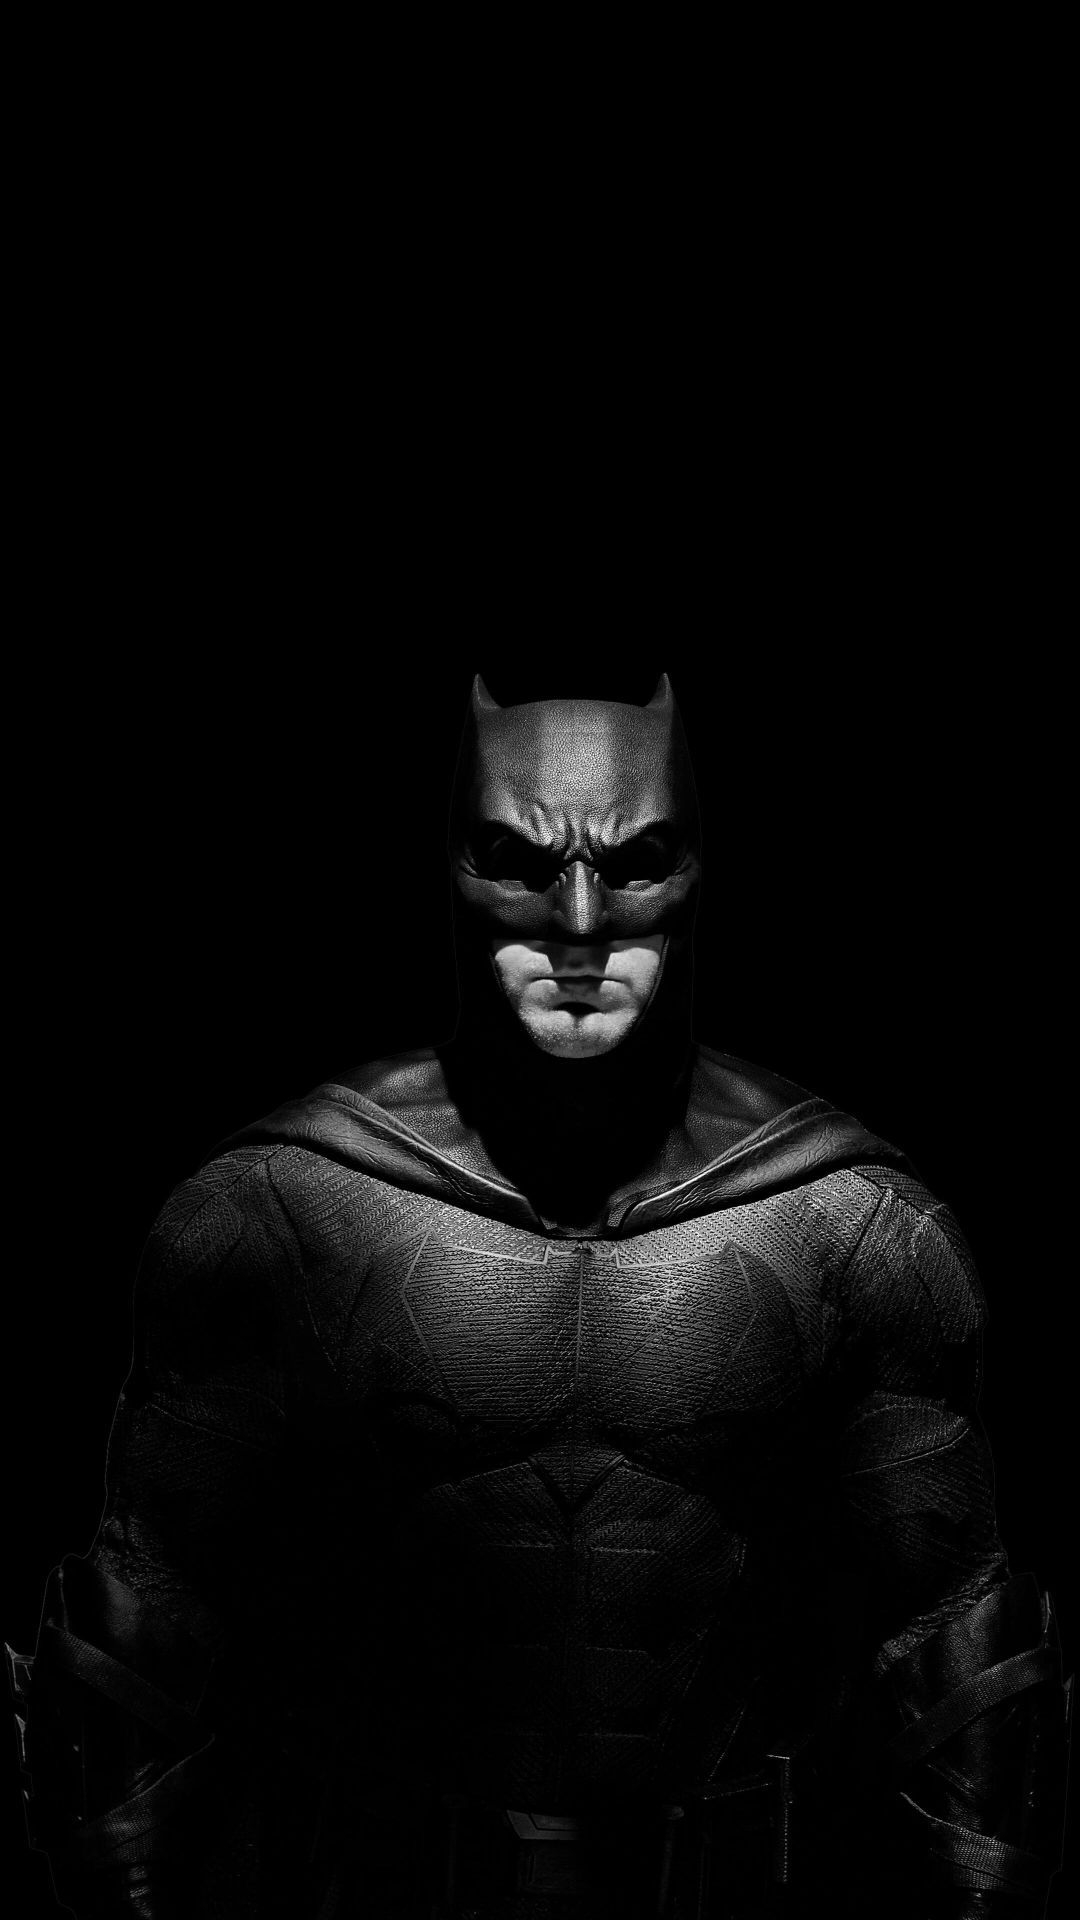  Batman Hintergrundbild 1080x1920. Batman Wallpaper Batman Wallpaper Download